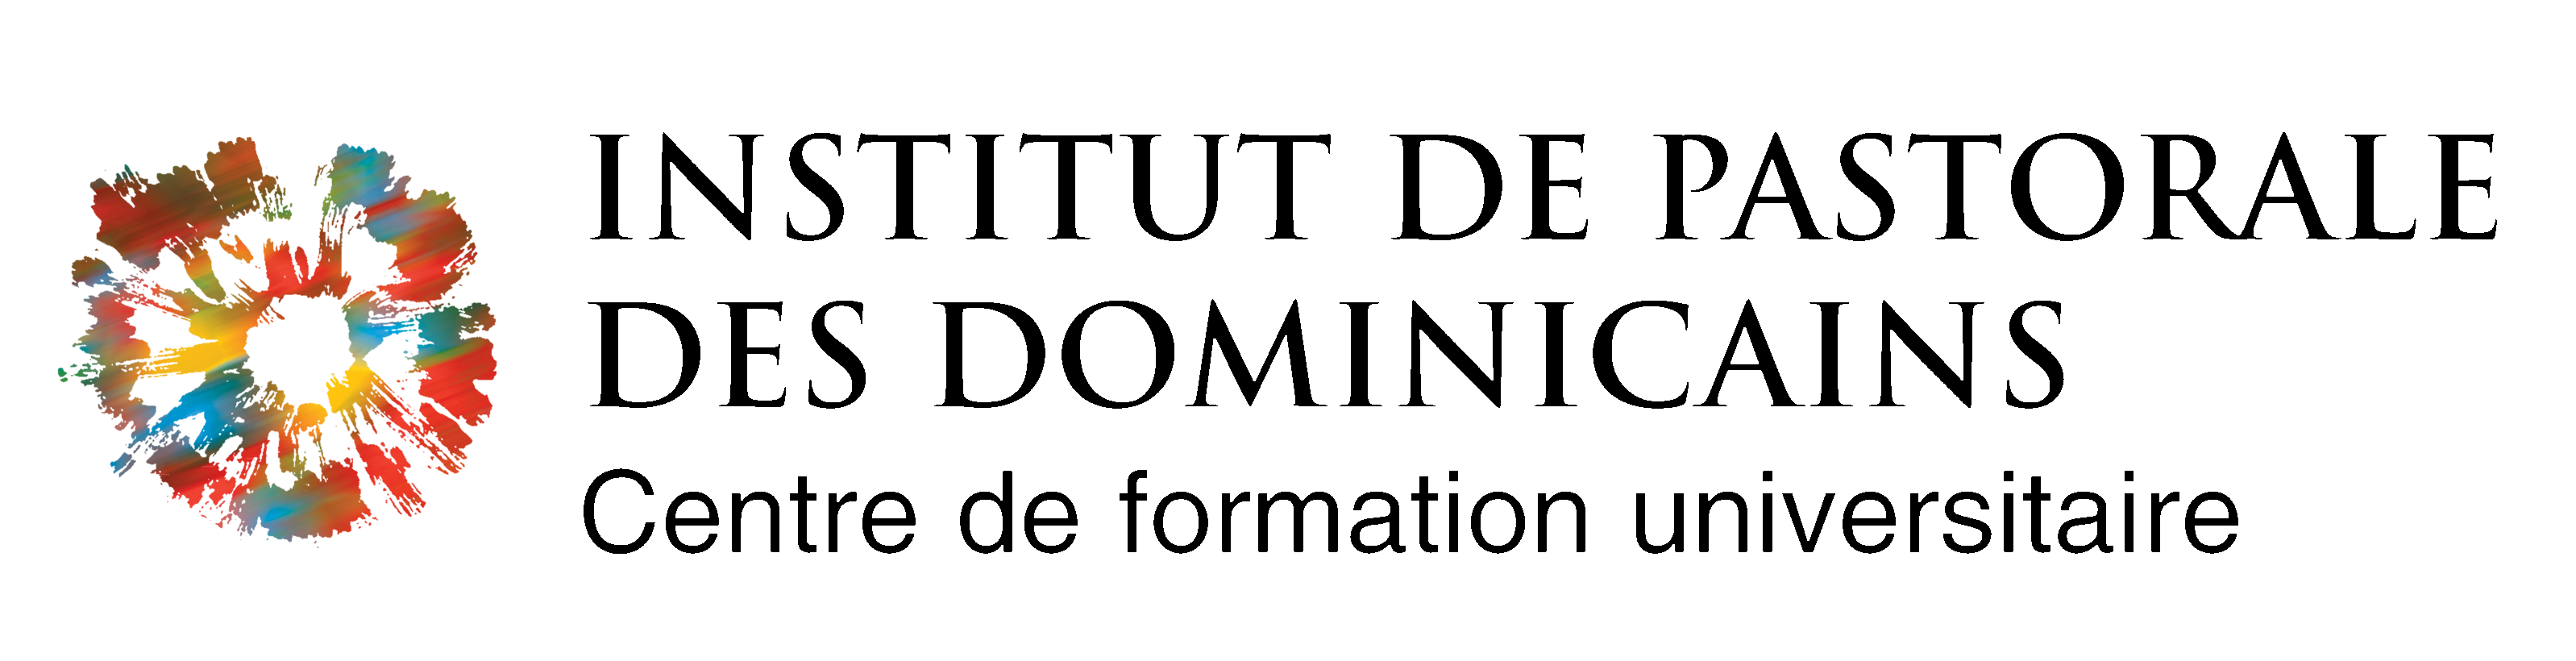 Logo_officiel_Institut_de_pastorale_noir_1.png